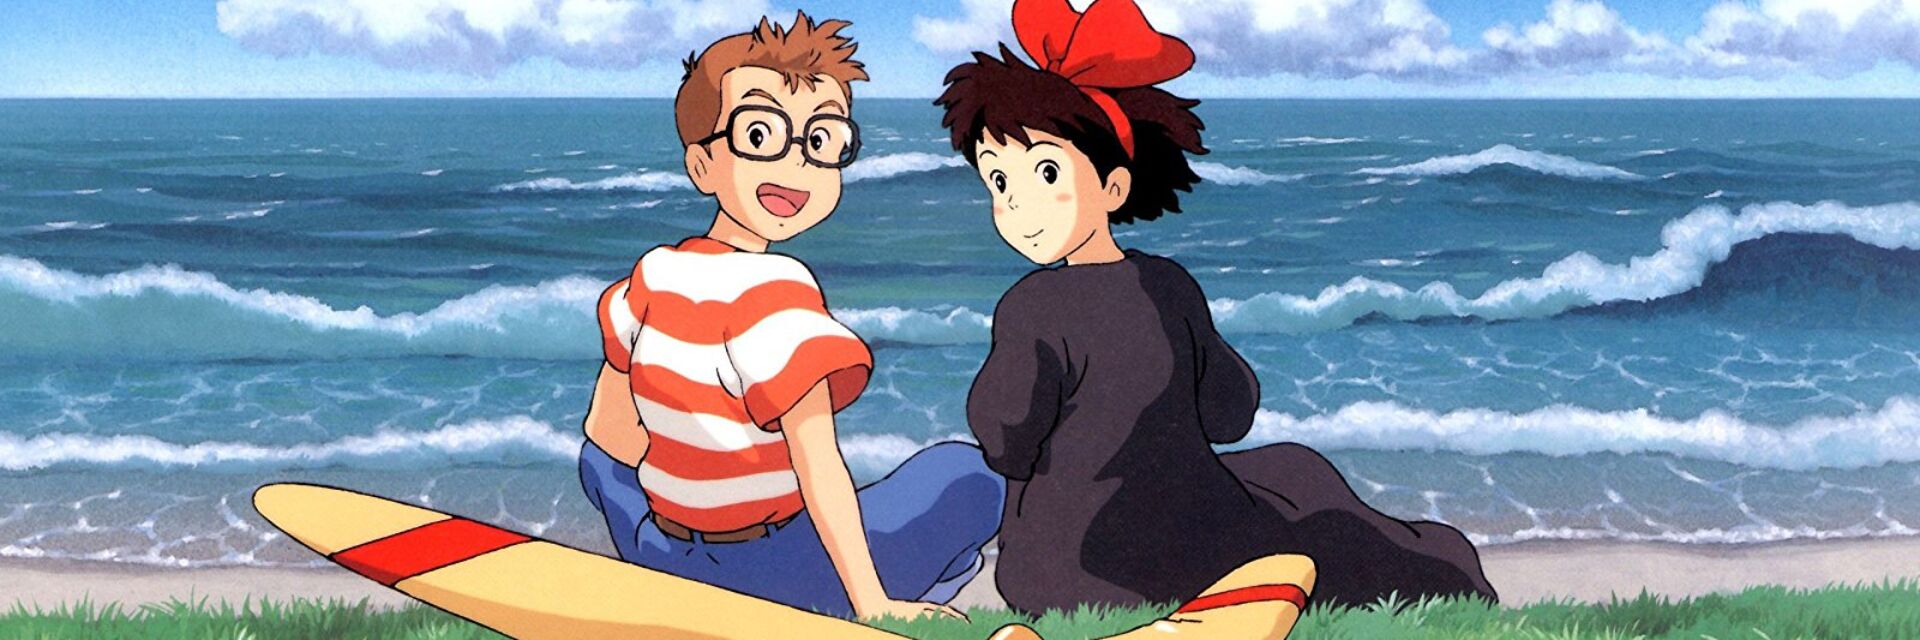 Studio Ghibli Scene, Kiki's Delivery Service